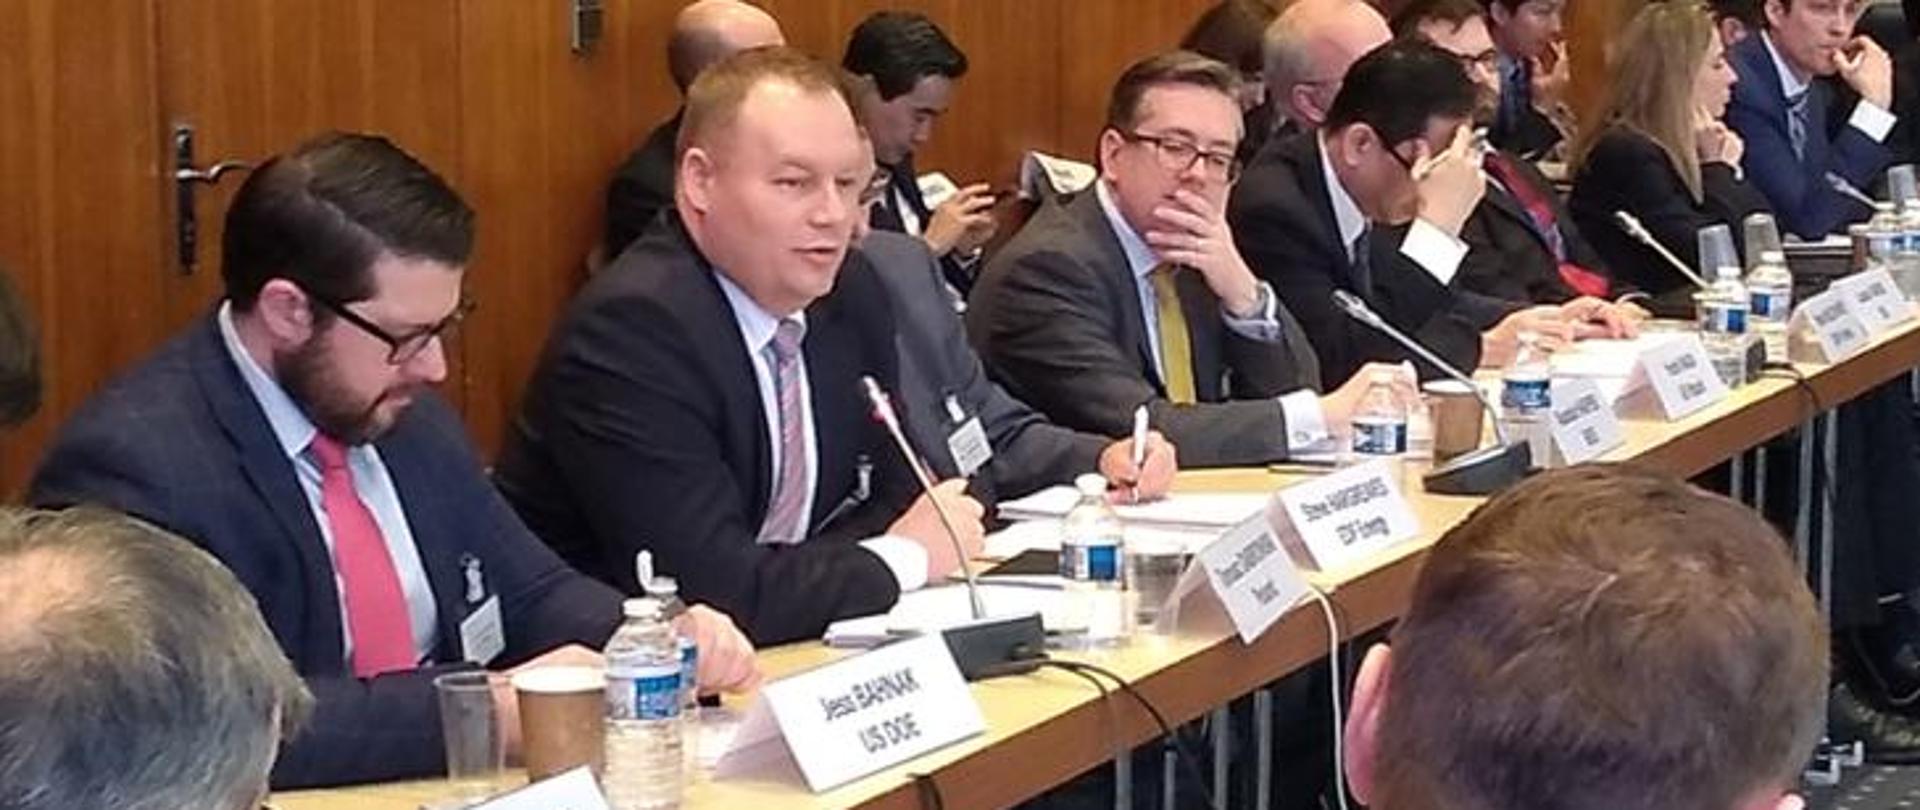 Na zdjęciu widoczna jest grupa osób drugi od lewej wiceminister energii Tomasz Dąbrowski 